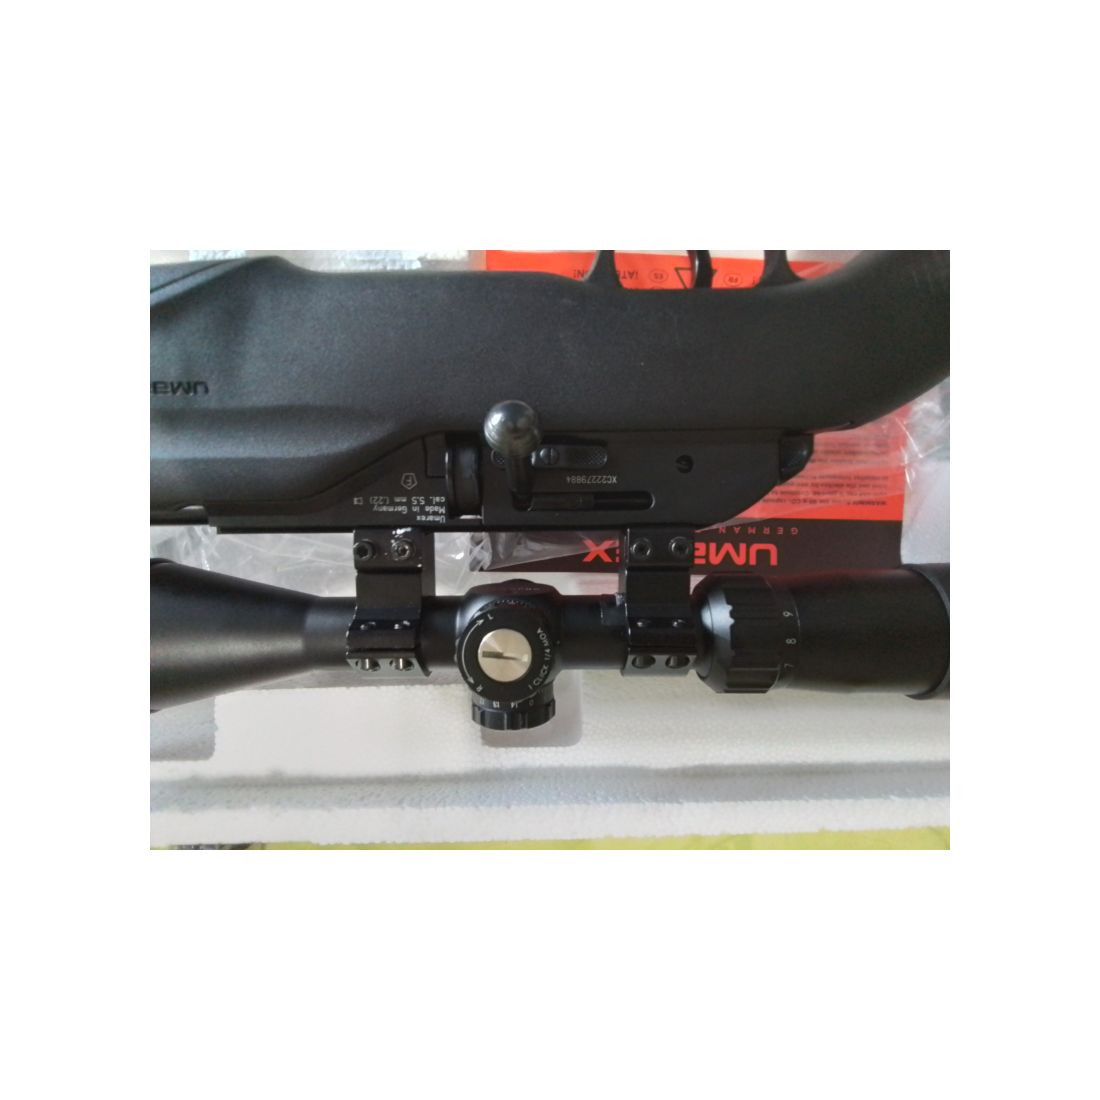 Airmagnum 850 .22 Zielfernrohr Schalldämpfer 5,5mm Diabolo m2 Umarex Co2